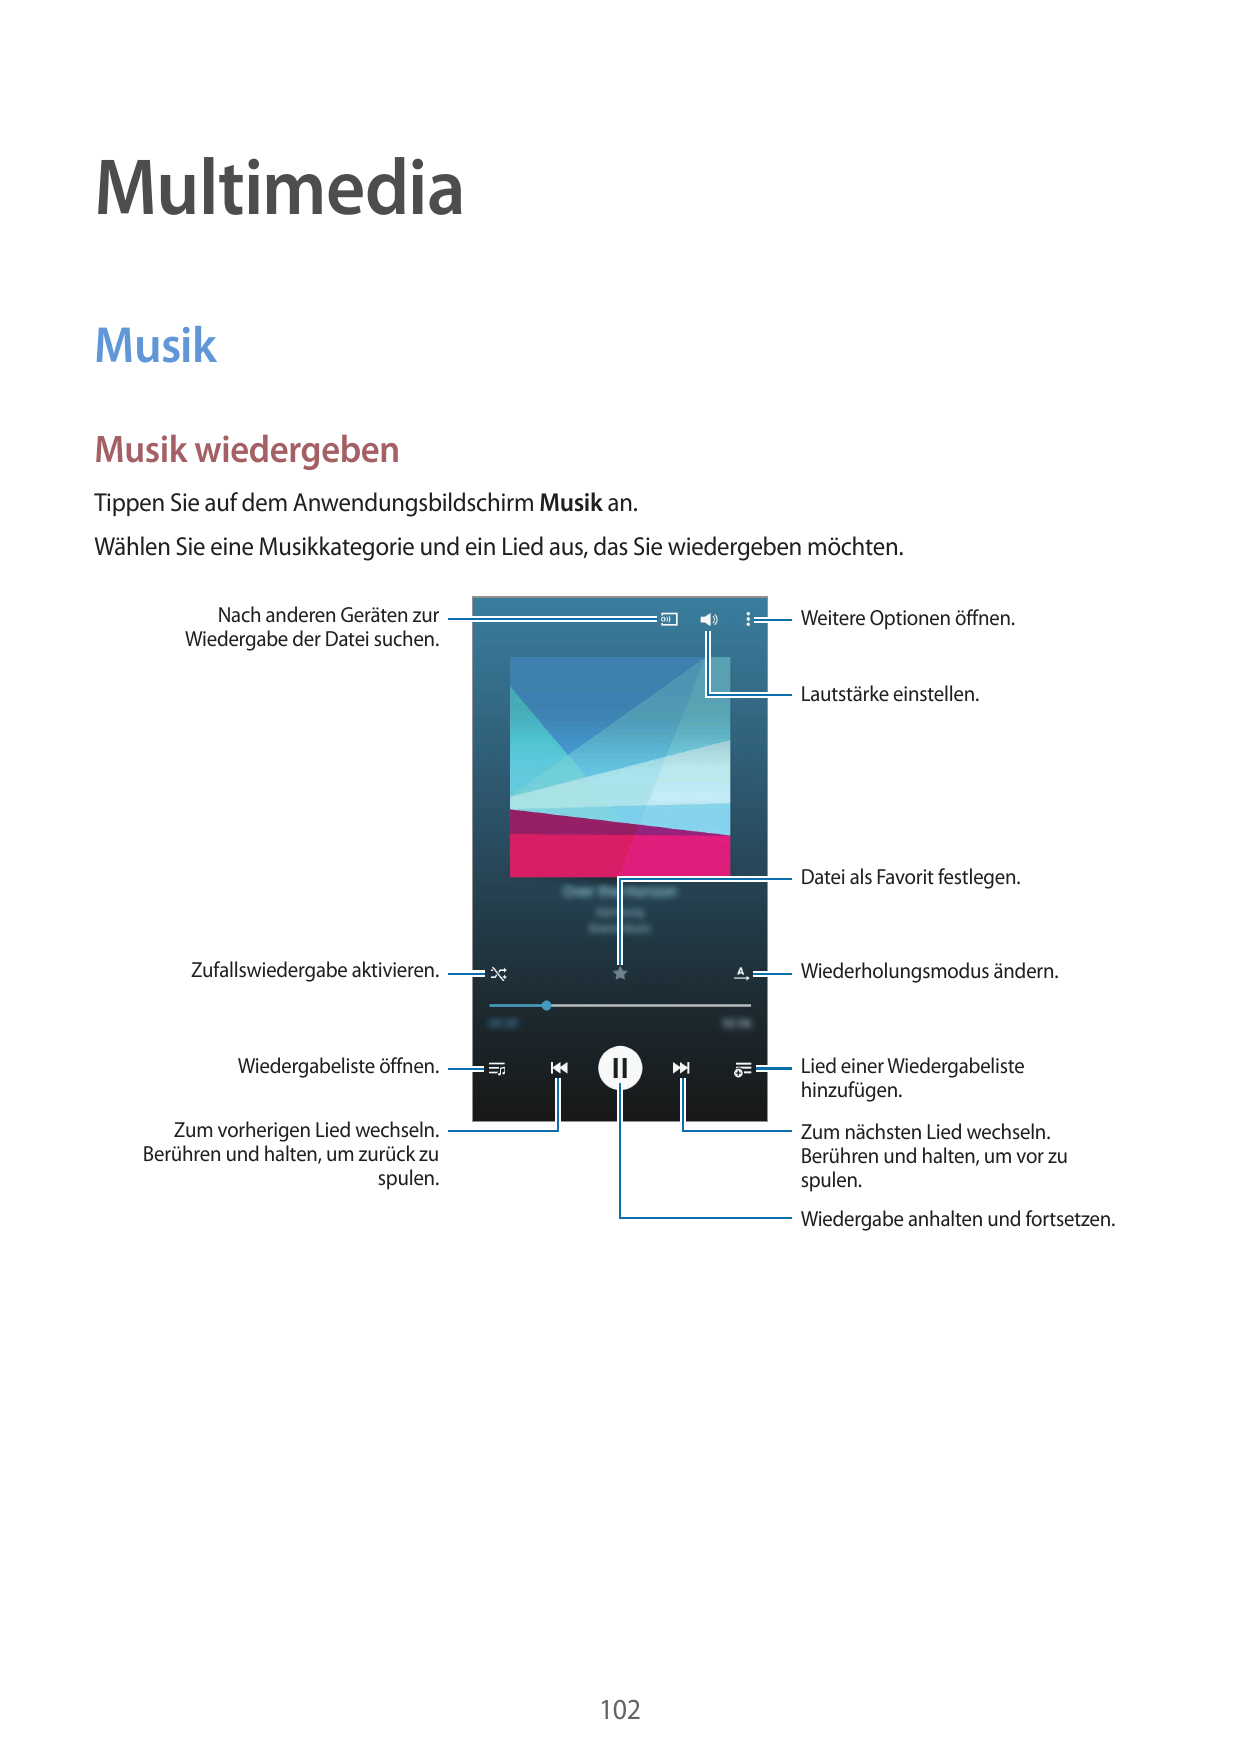 MultimediaMusikMusik wiedergebenTippen Sie auf dem Anwendungsbildschirm Musik an.Wählen Sie eine Musikkategorie und ein Lied aus